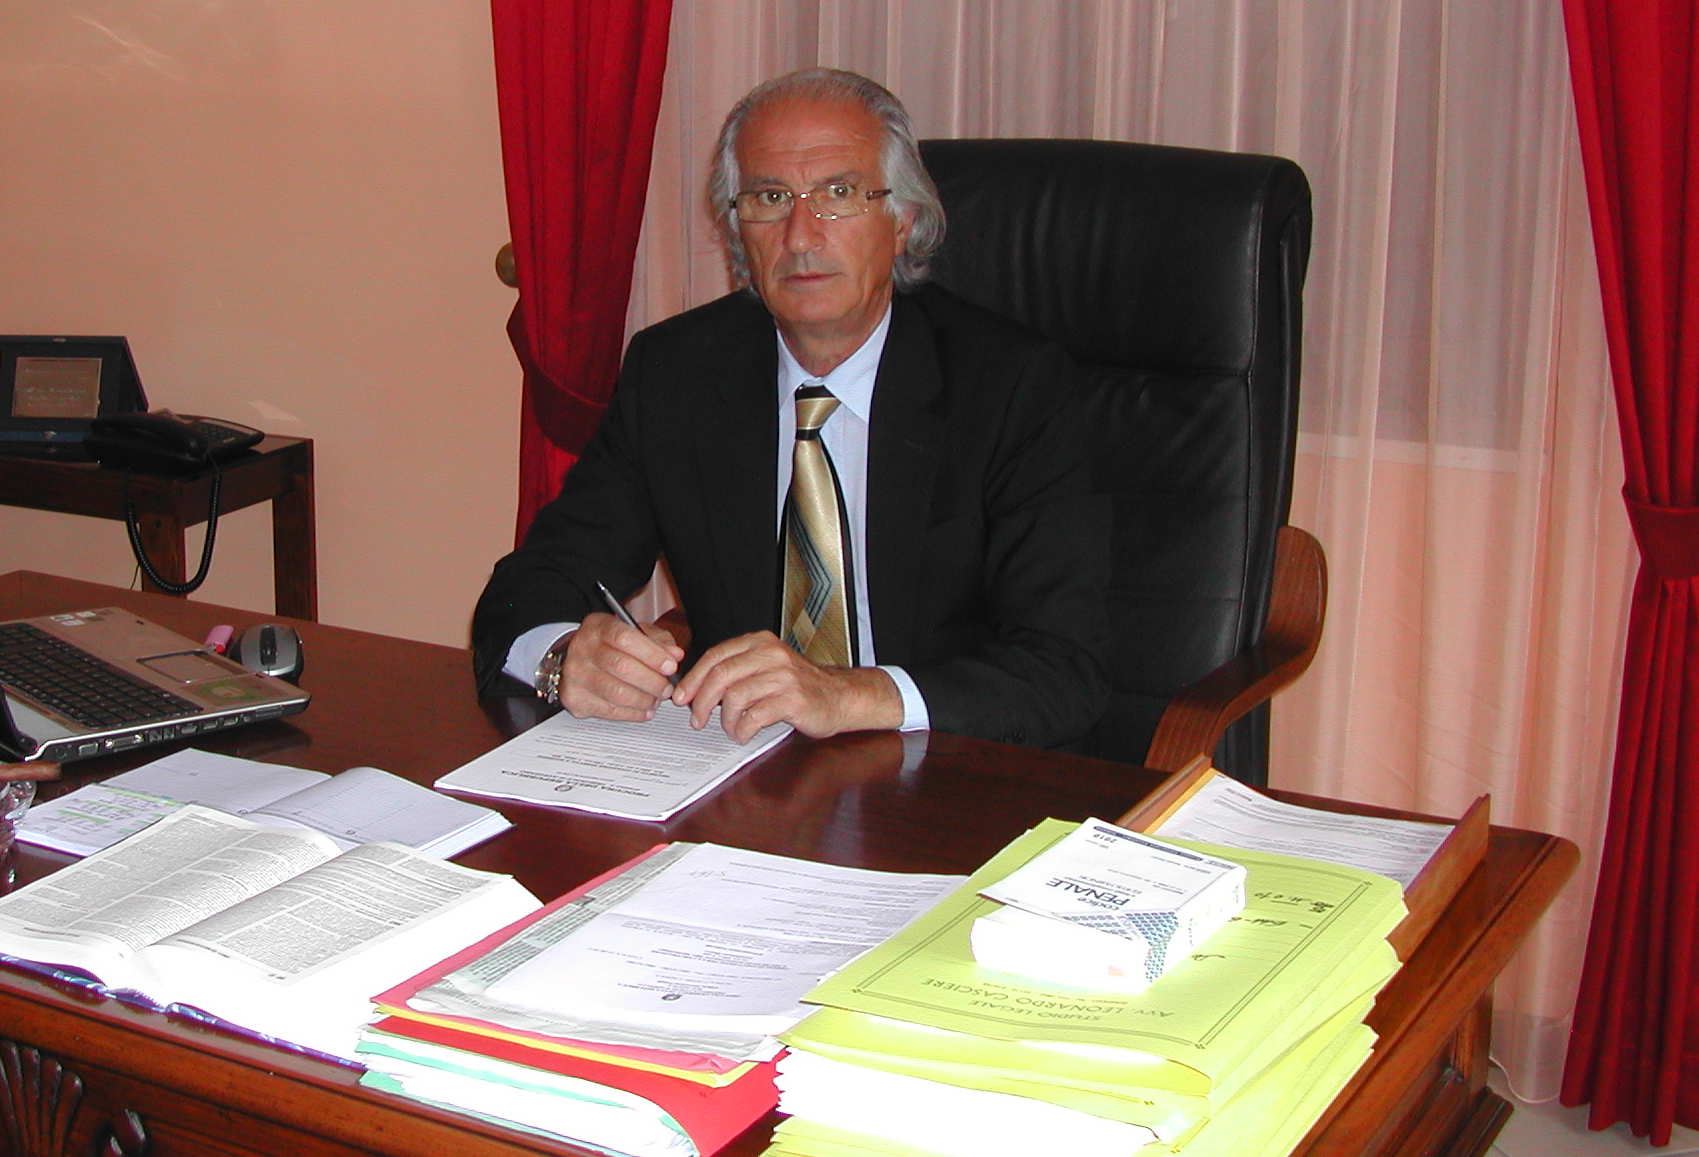 L'avvocato Leonardo Casciere si candida a Sindaco di Avezzano